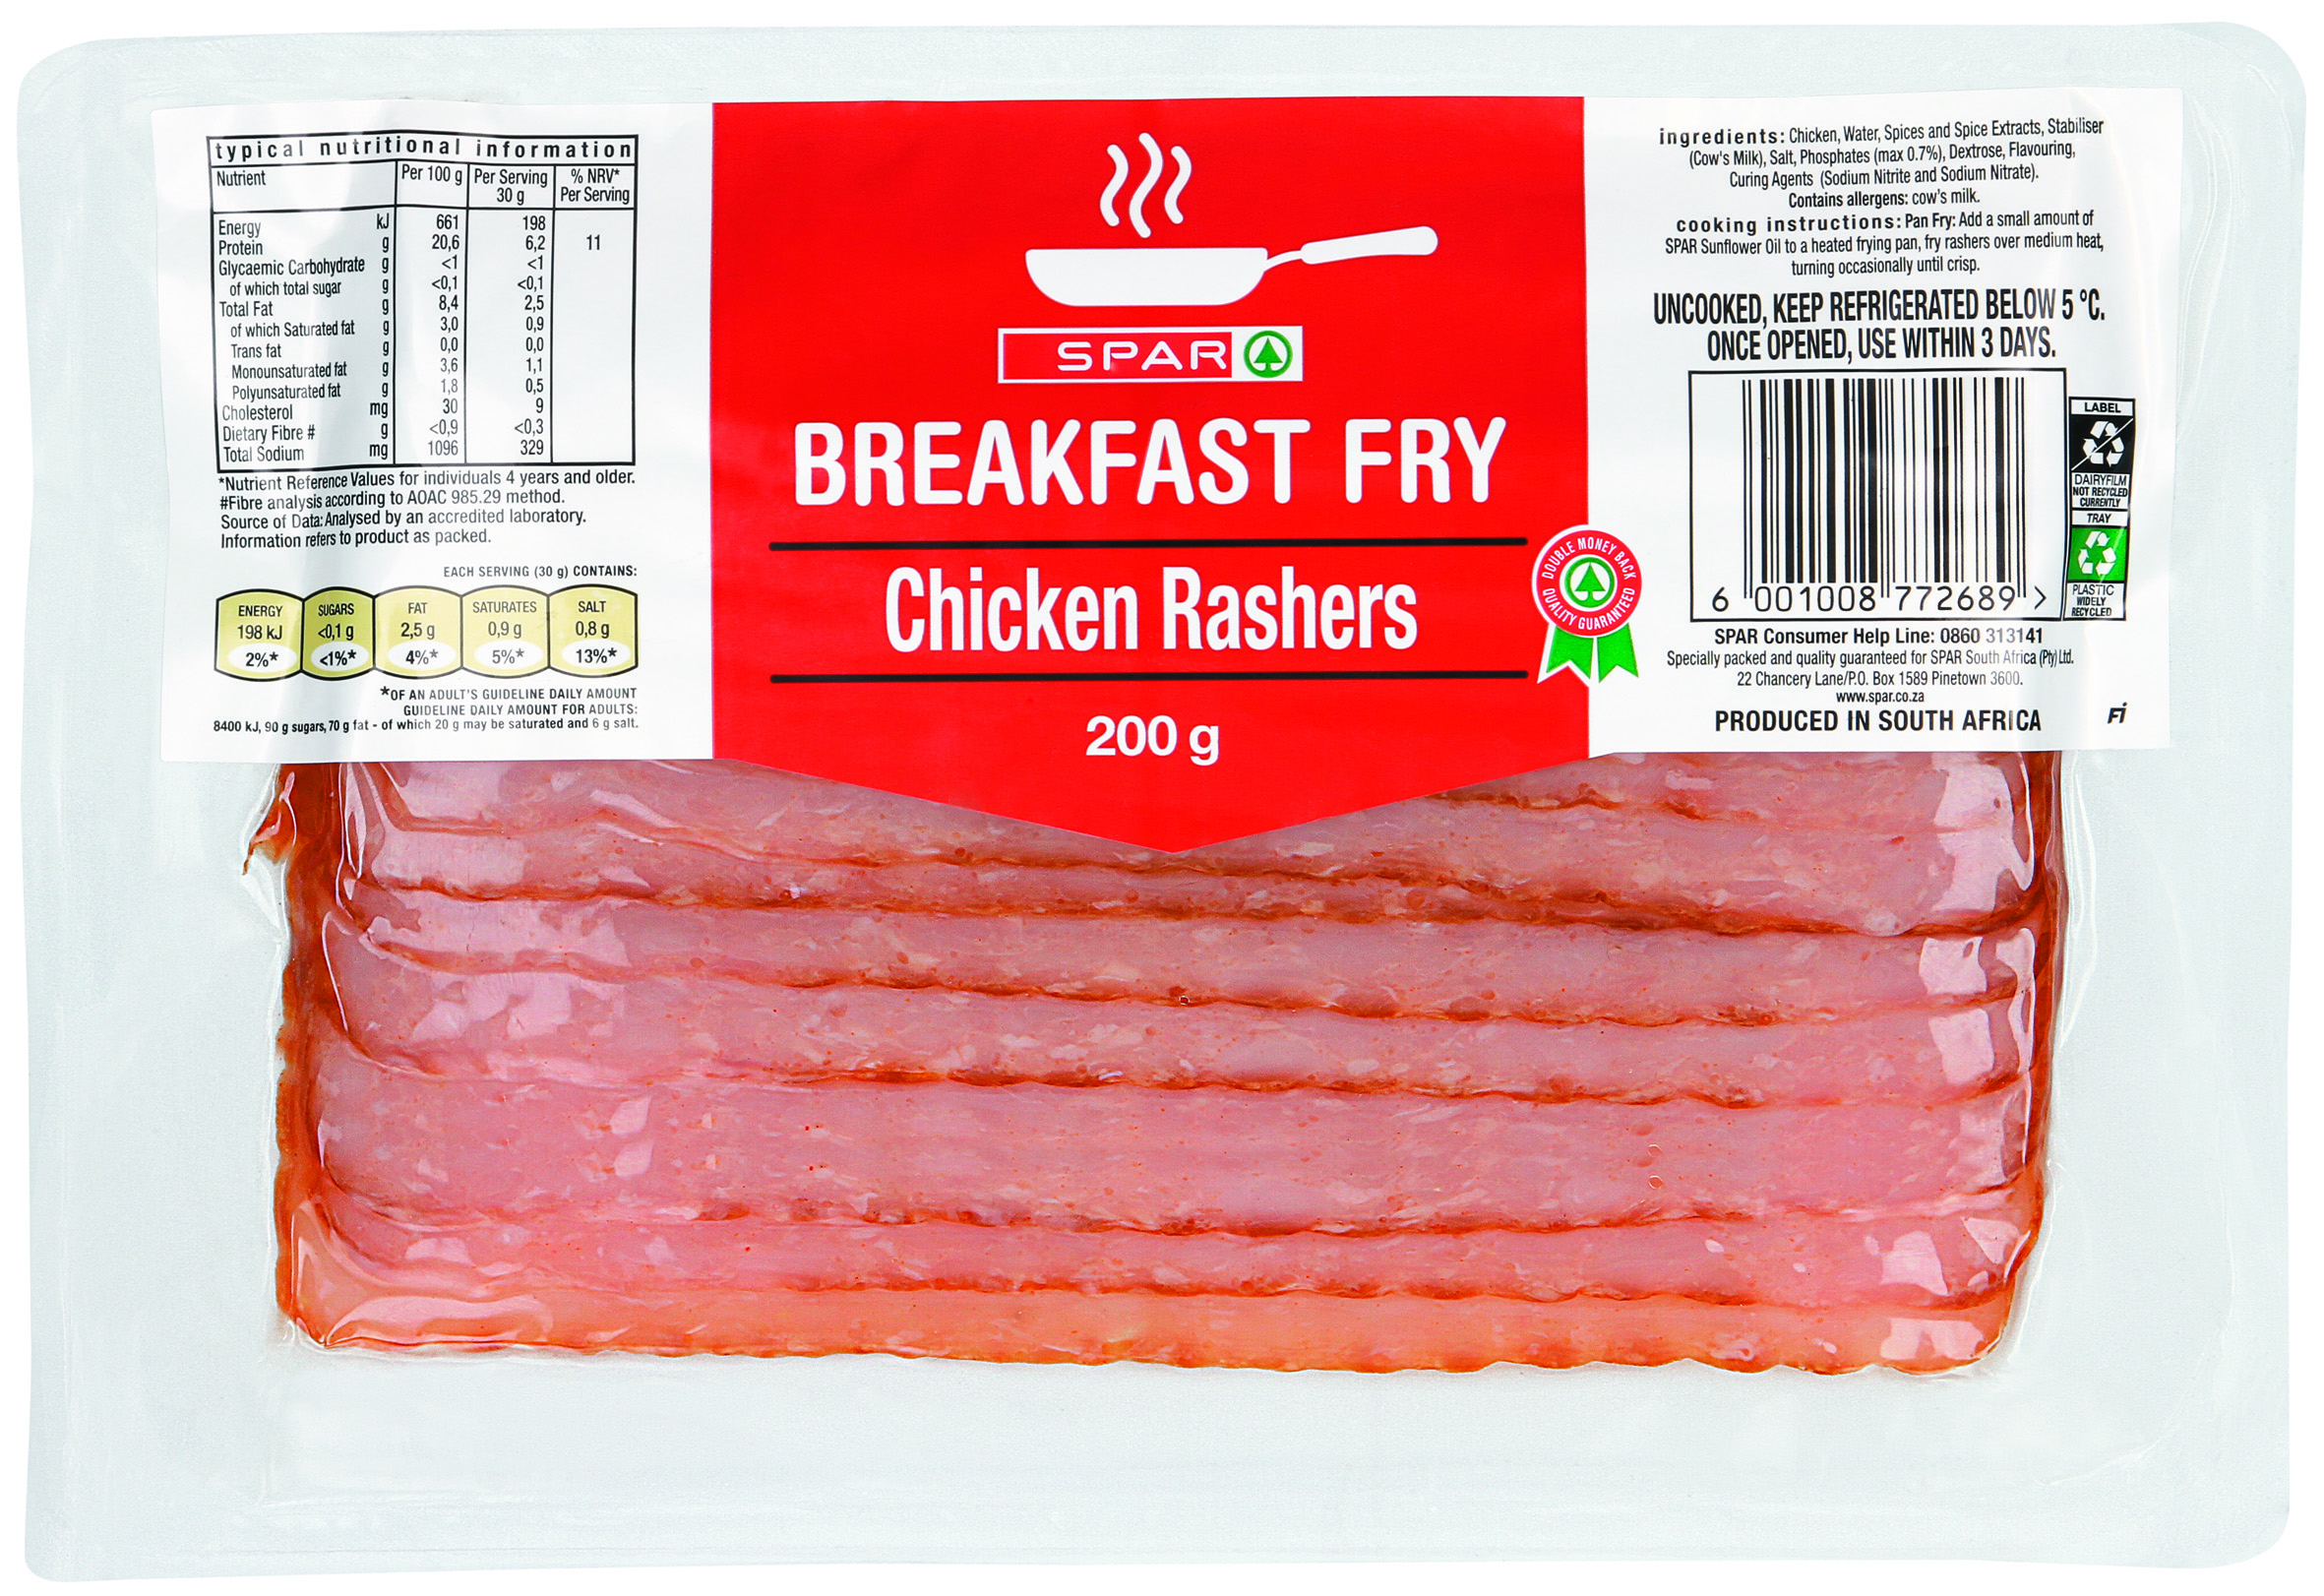 breakfast fry - chicken rashers